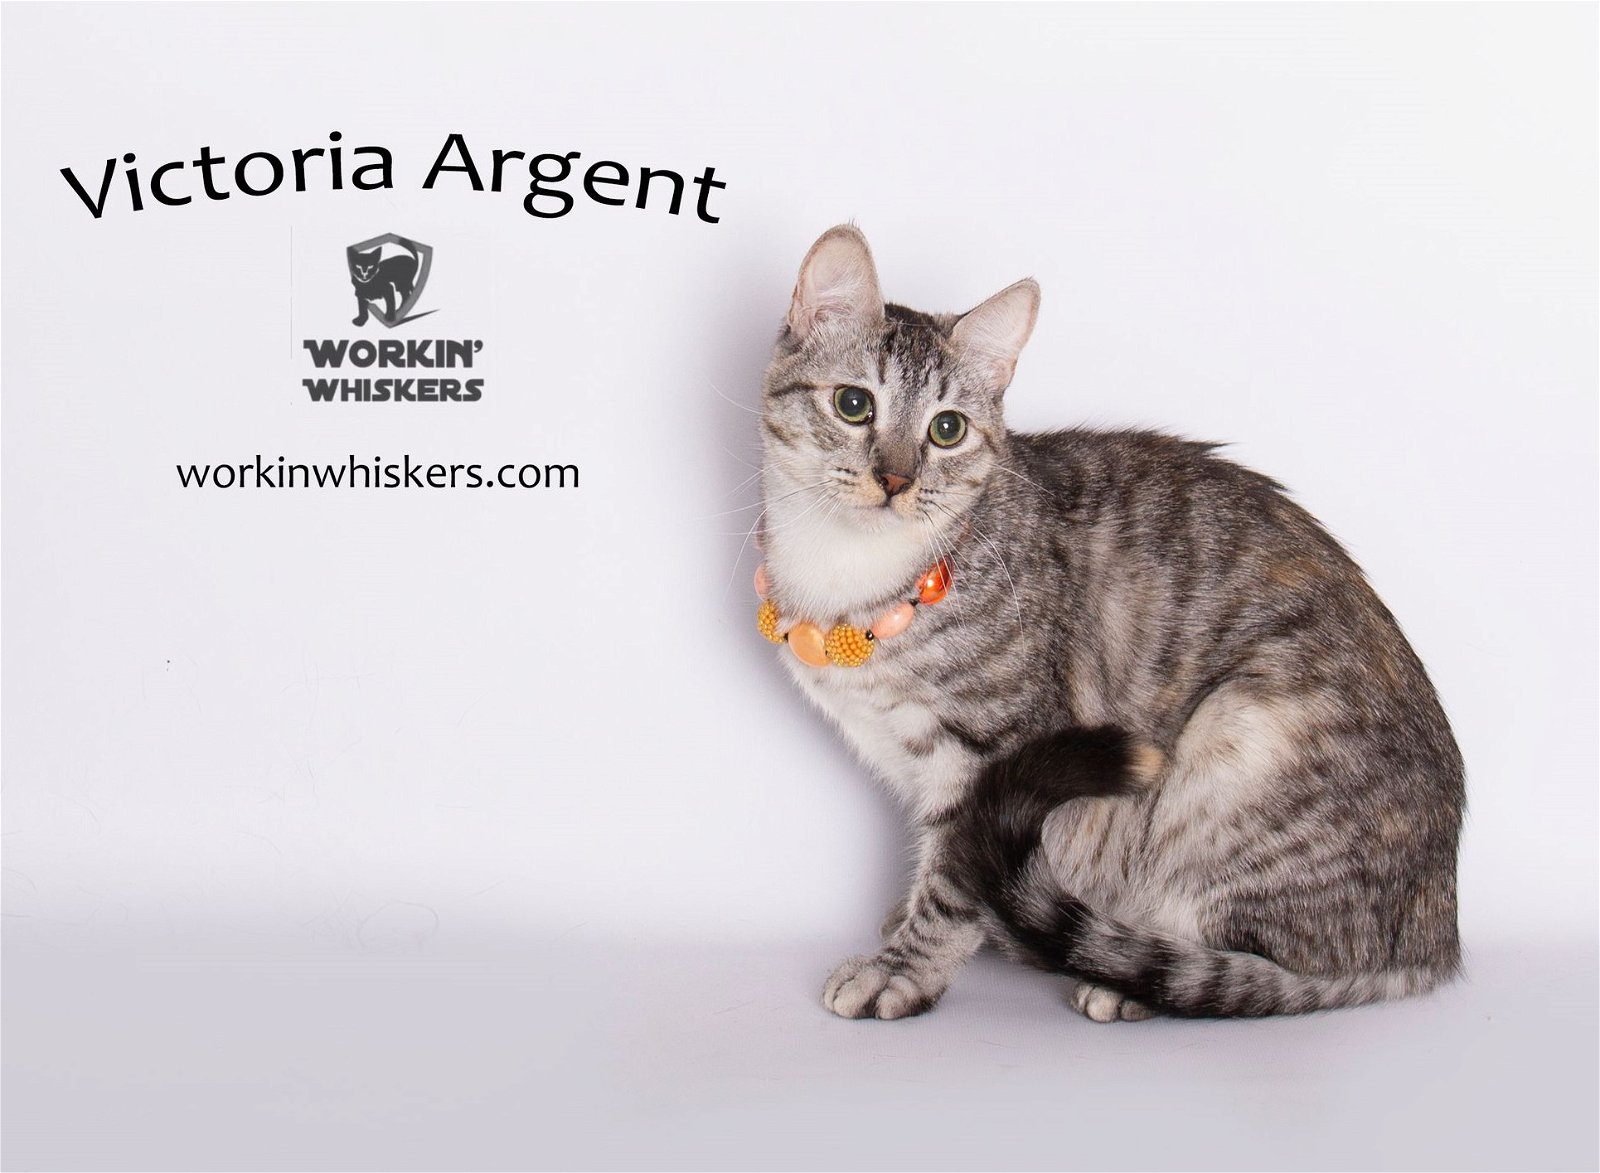 adoptable Cat in Hemet, CA named VICTORIA ARGENT